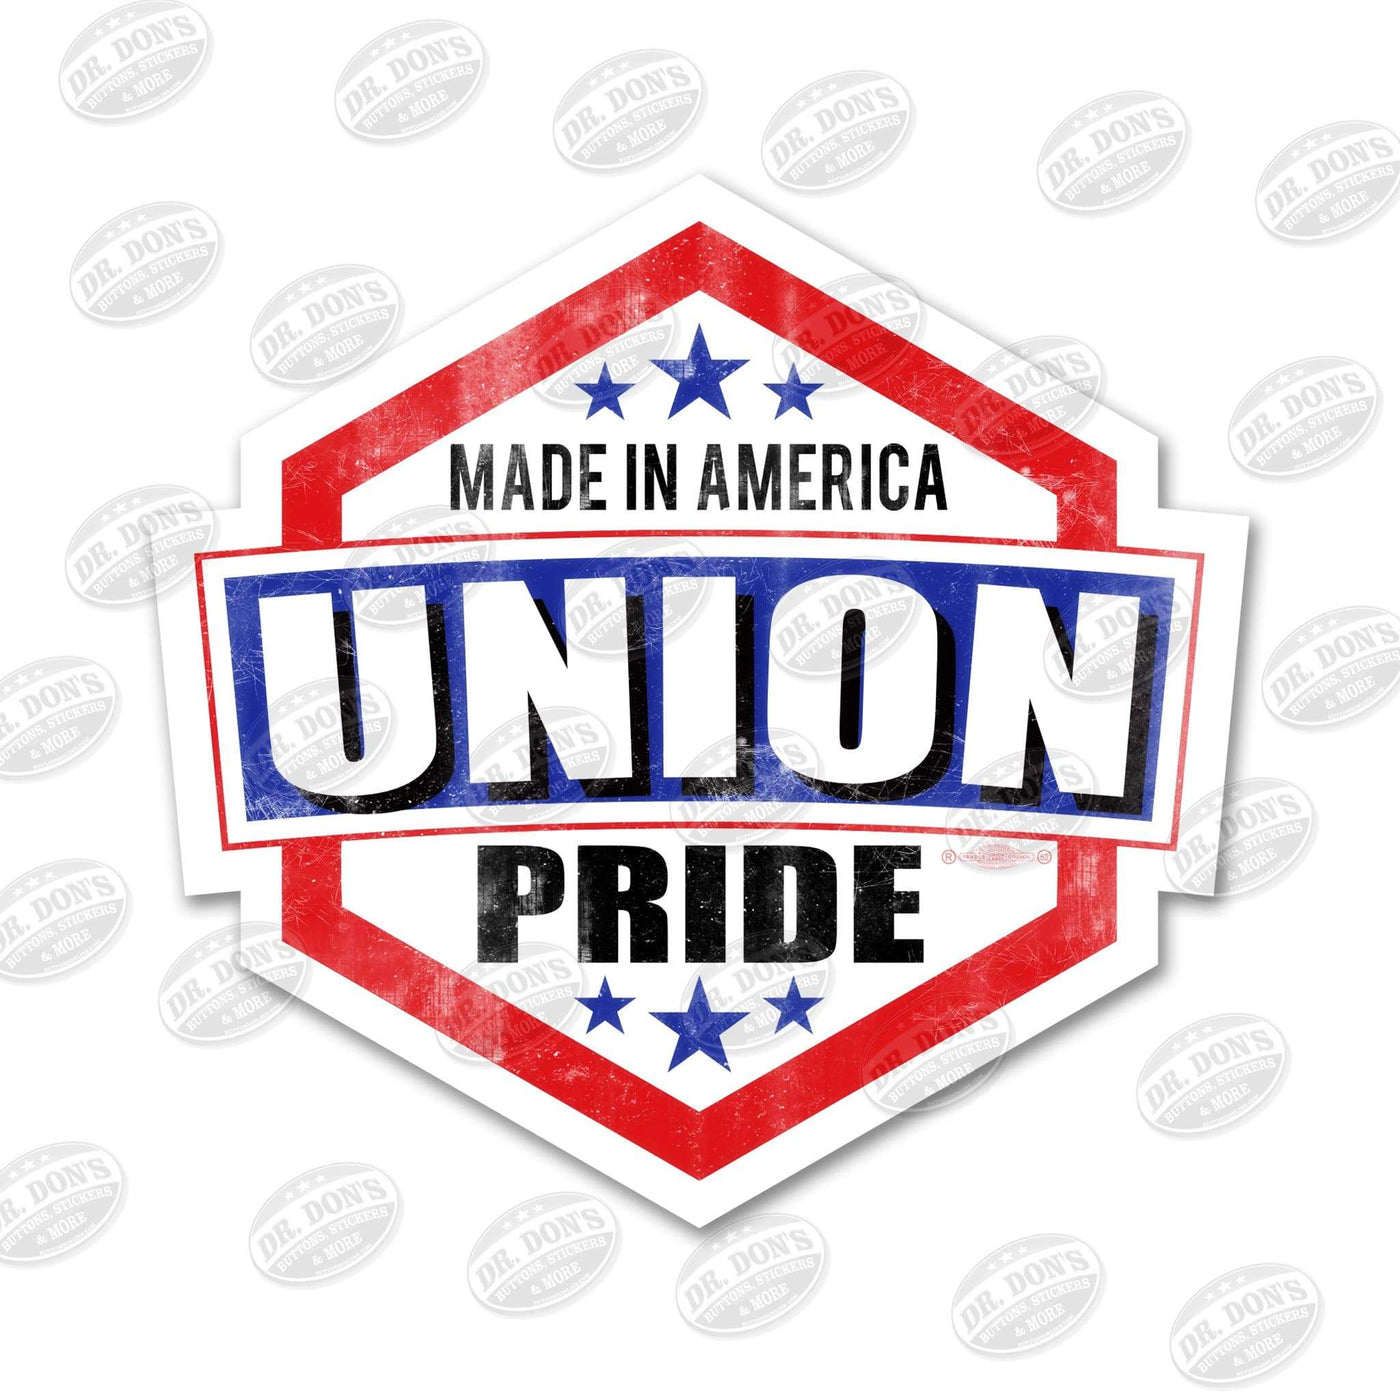 Made in America Union Pride  Hard Hat Sticker / UBEW-Union Pride